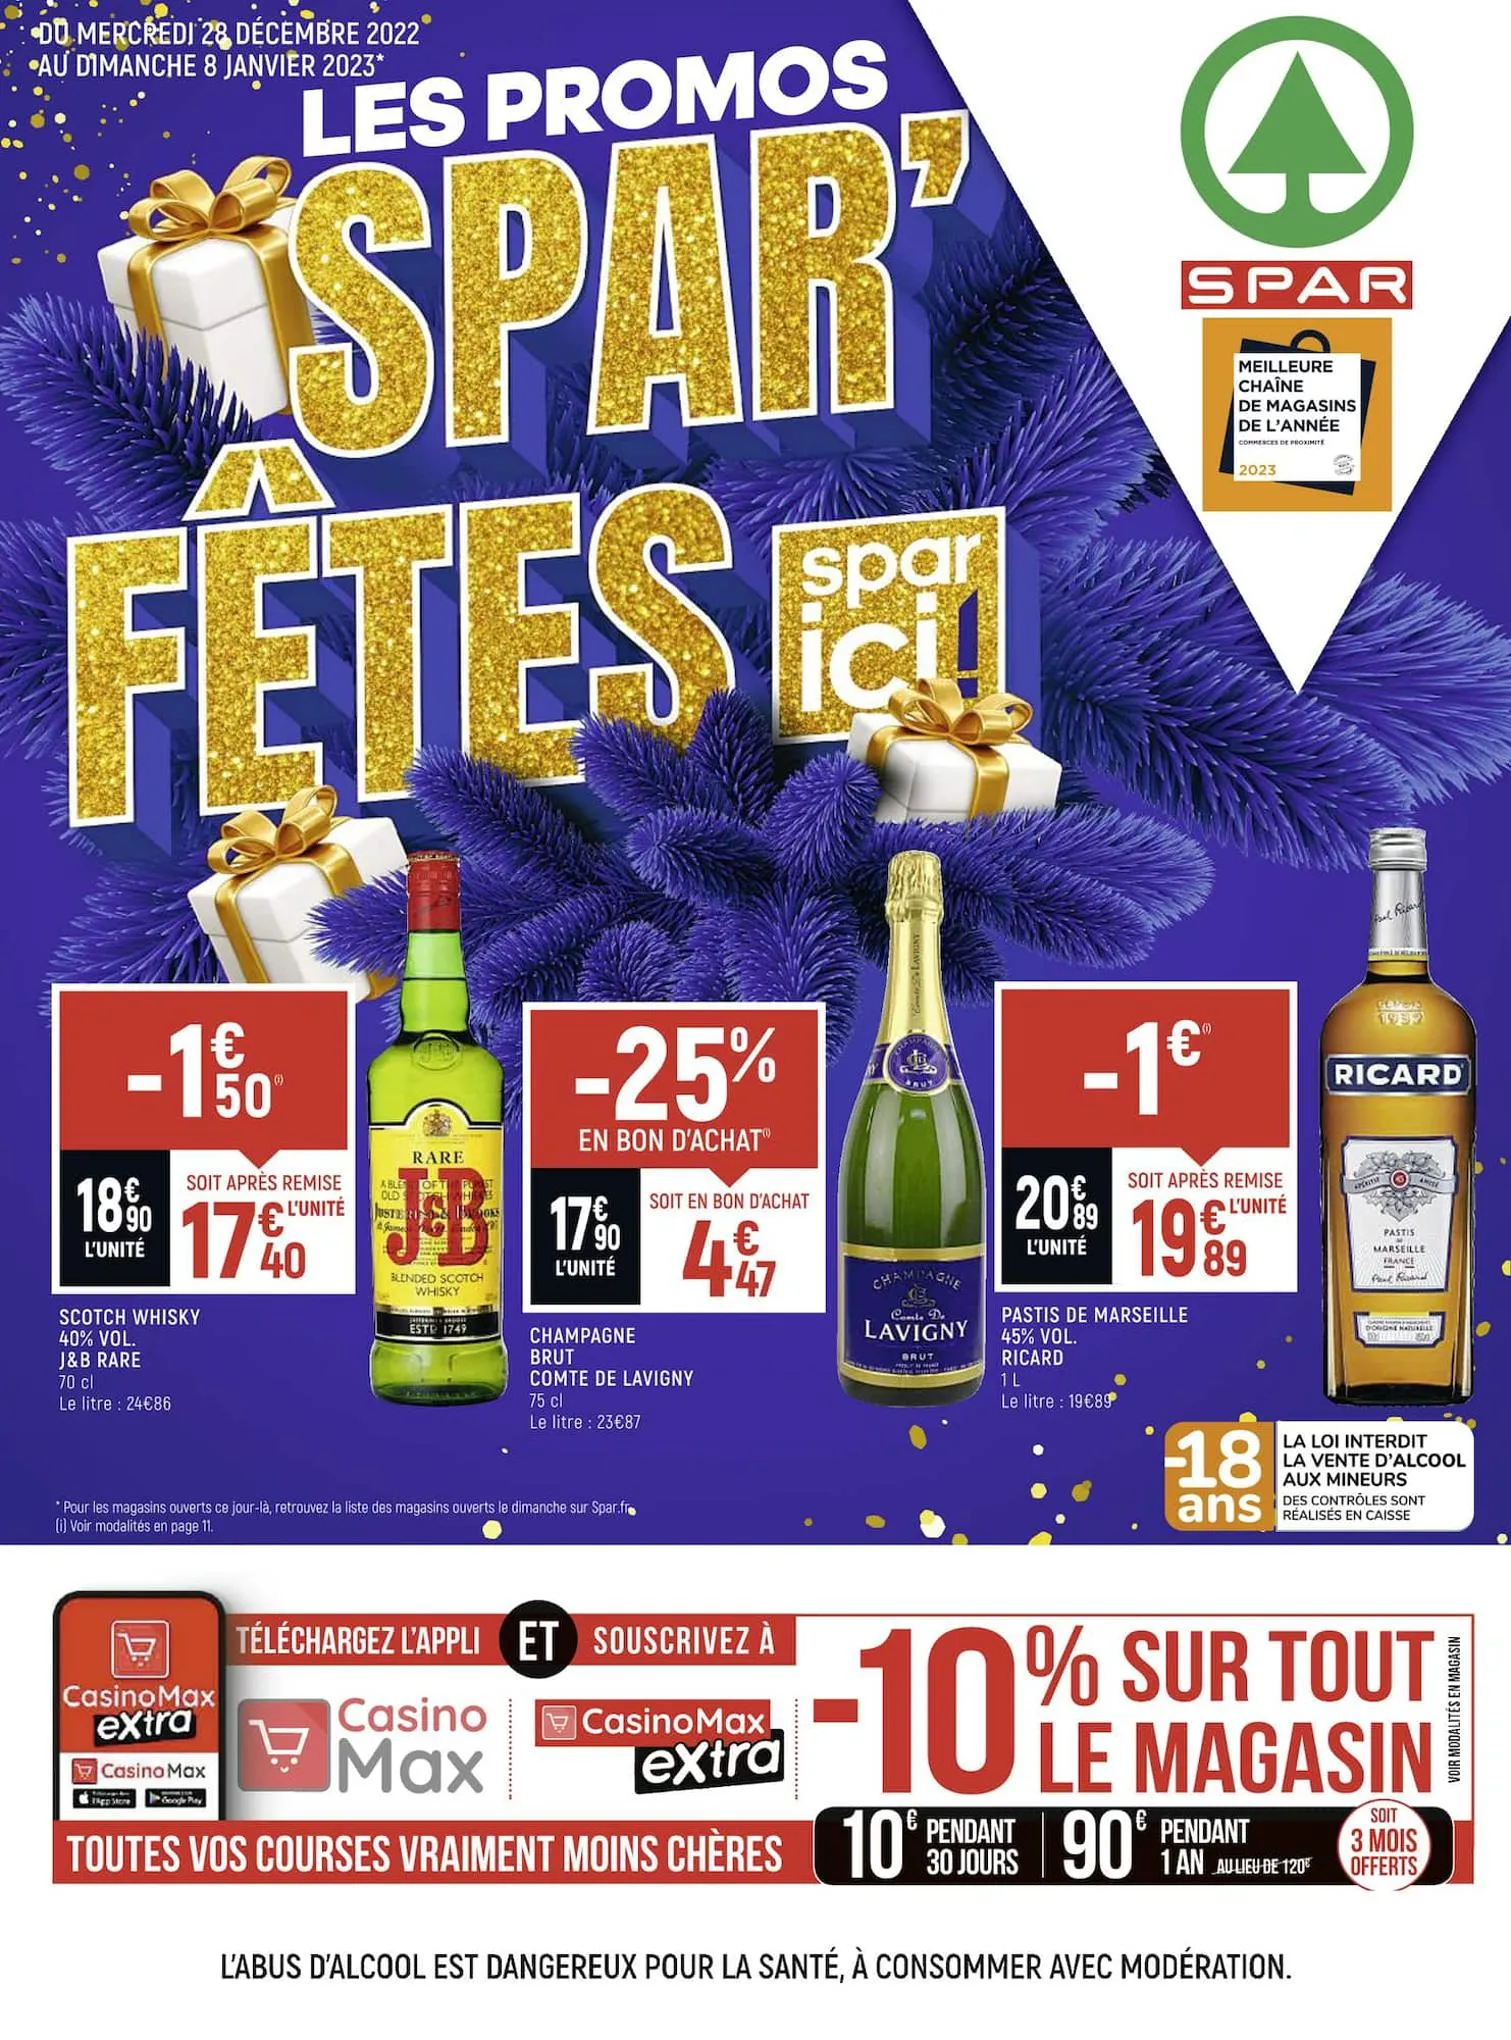 Catalogue Les promos Spar'fêtes, page 00001